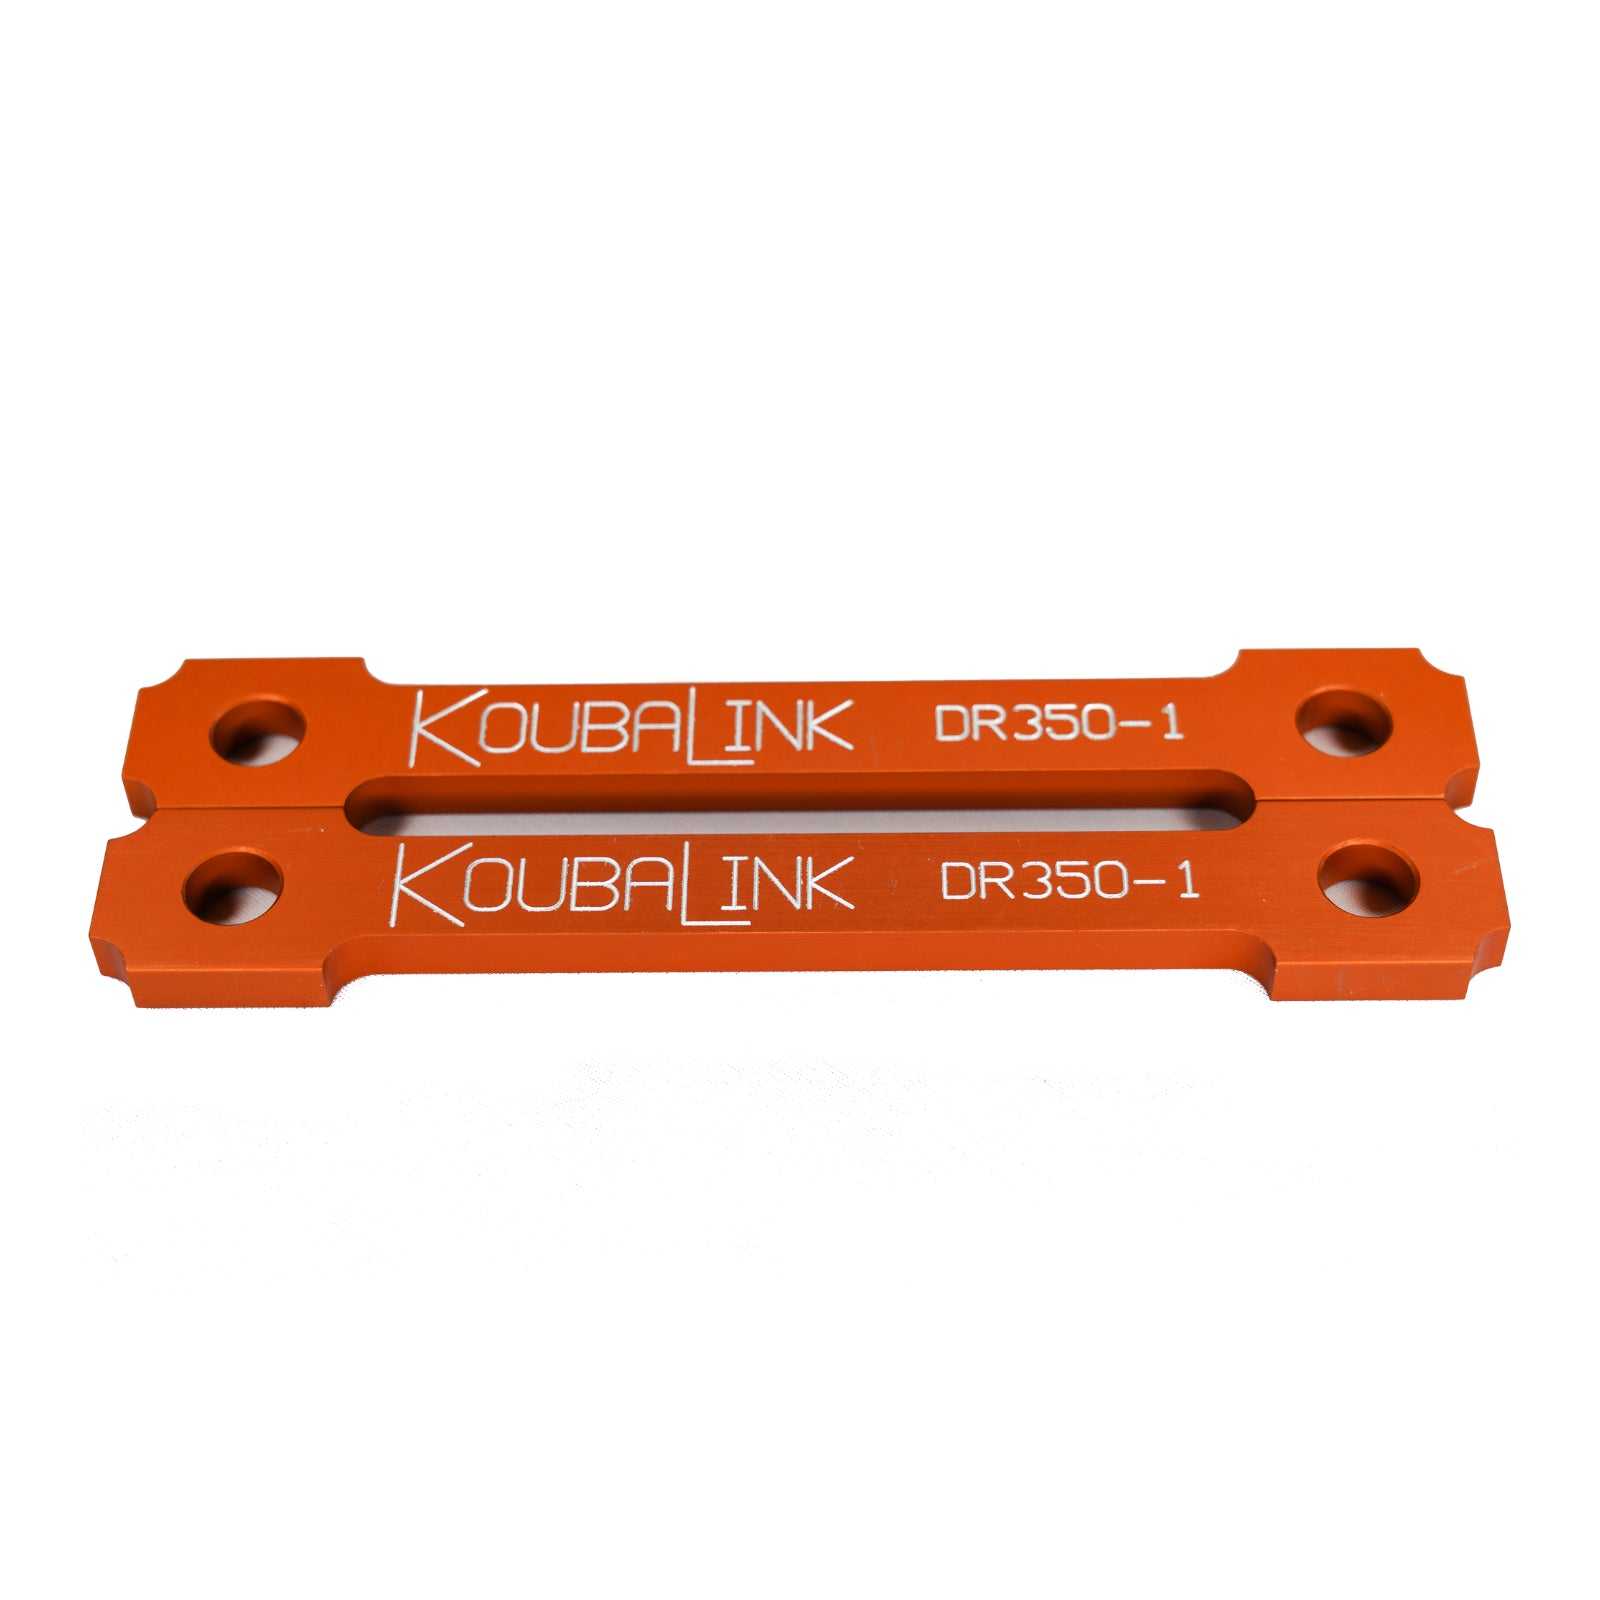 KoubaLink, Koubalink 38mm Tieferlegungsgestänge Dr350-1 – Orange